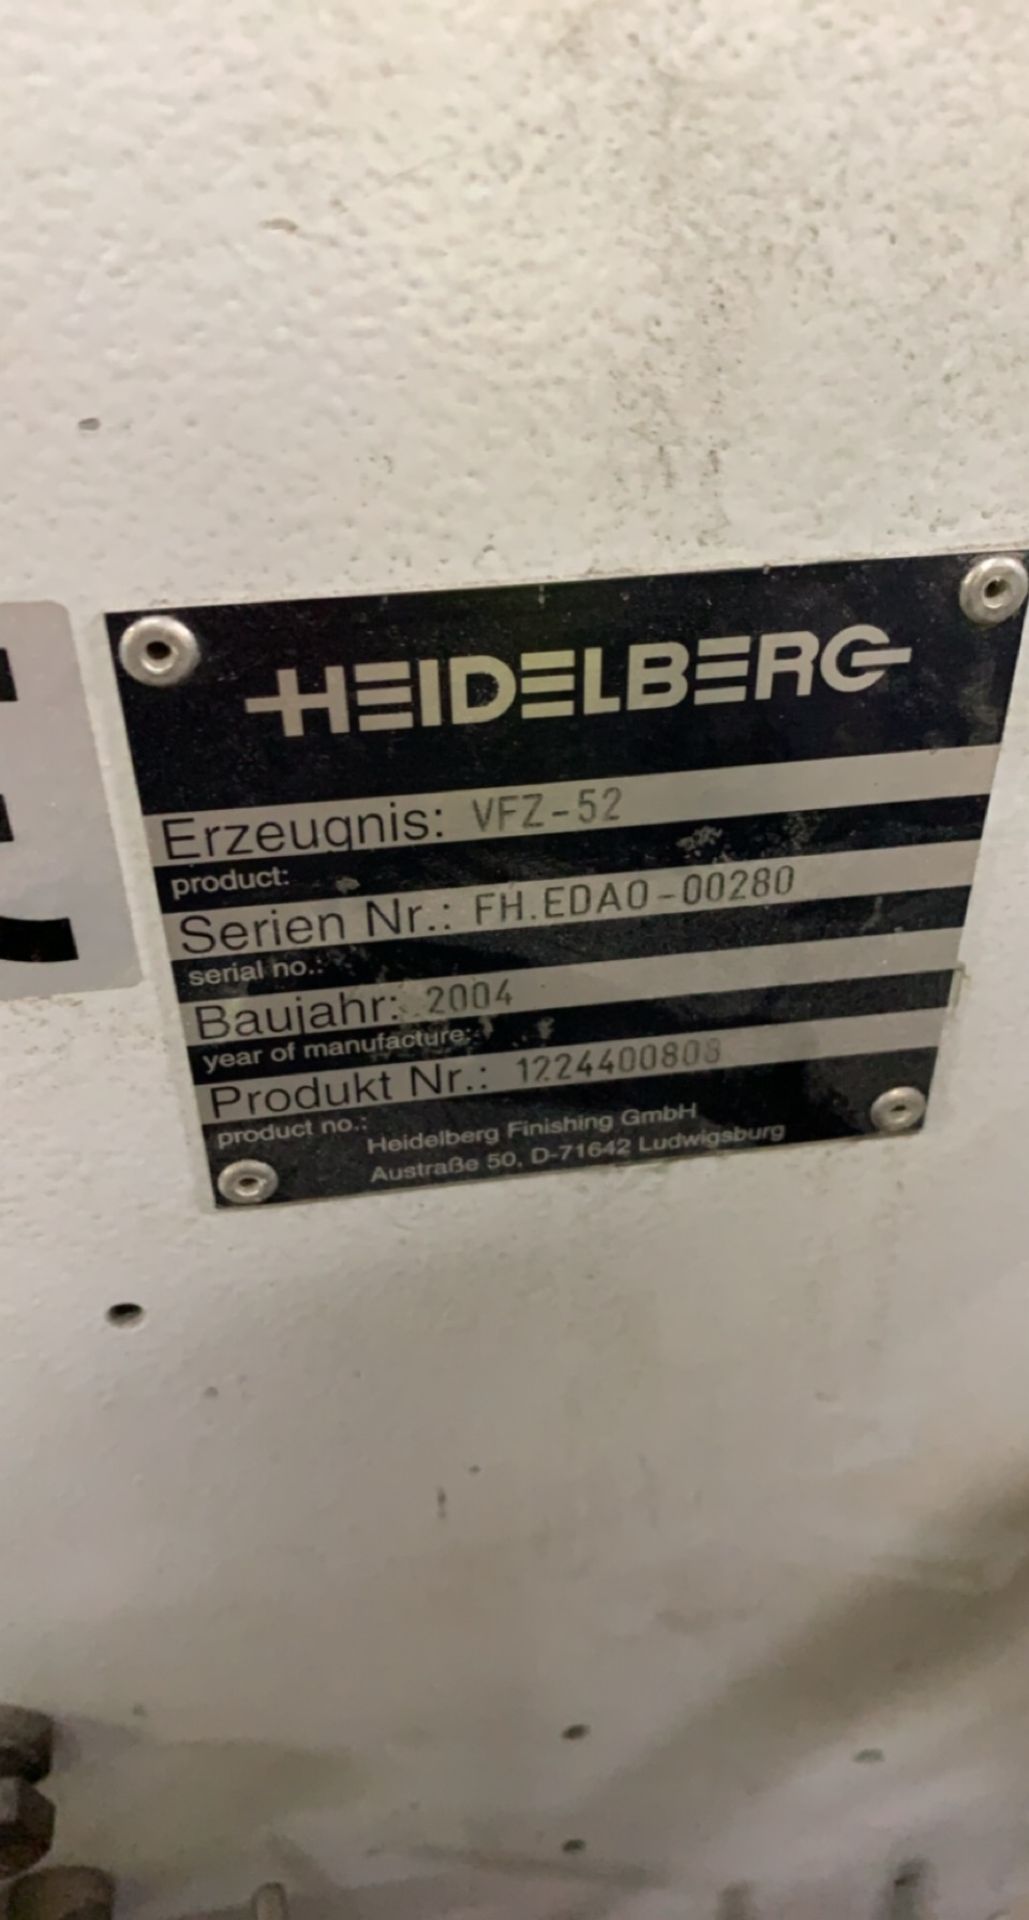 Heidelberg VFZ-52 four directional folding unit, sno FH.EDAO-00280, Product No 1224400808 - Image 3 of 5